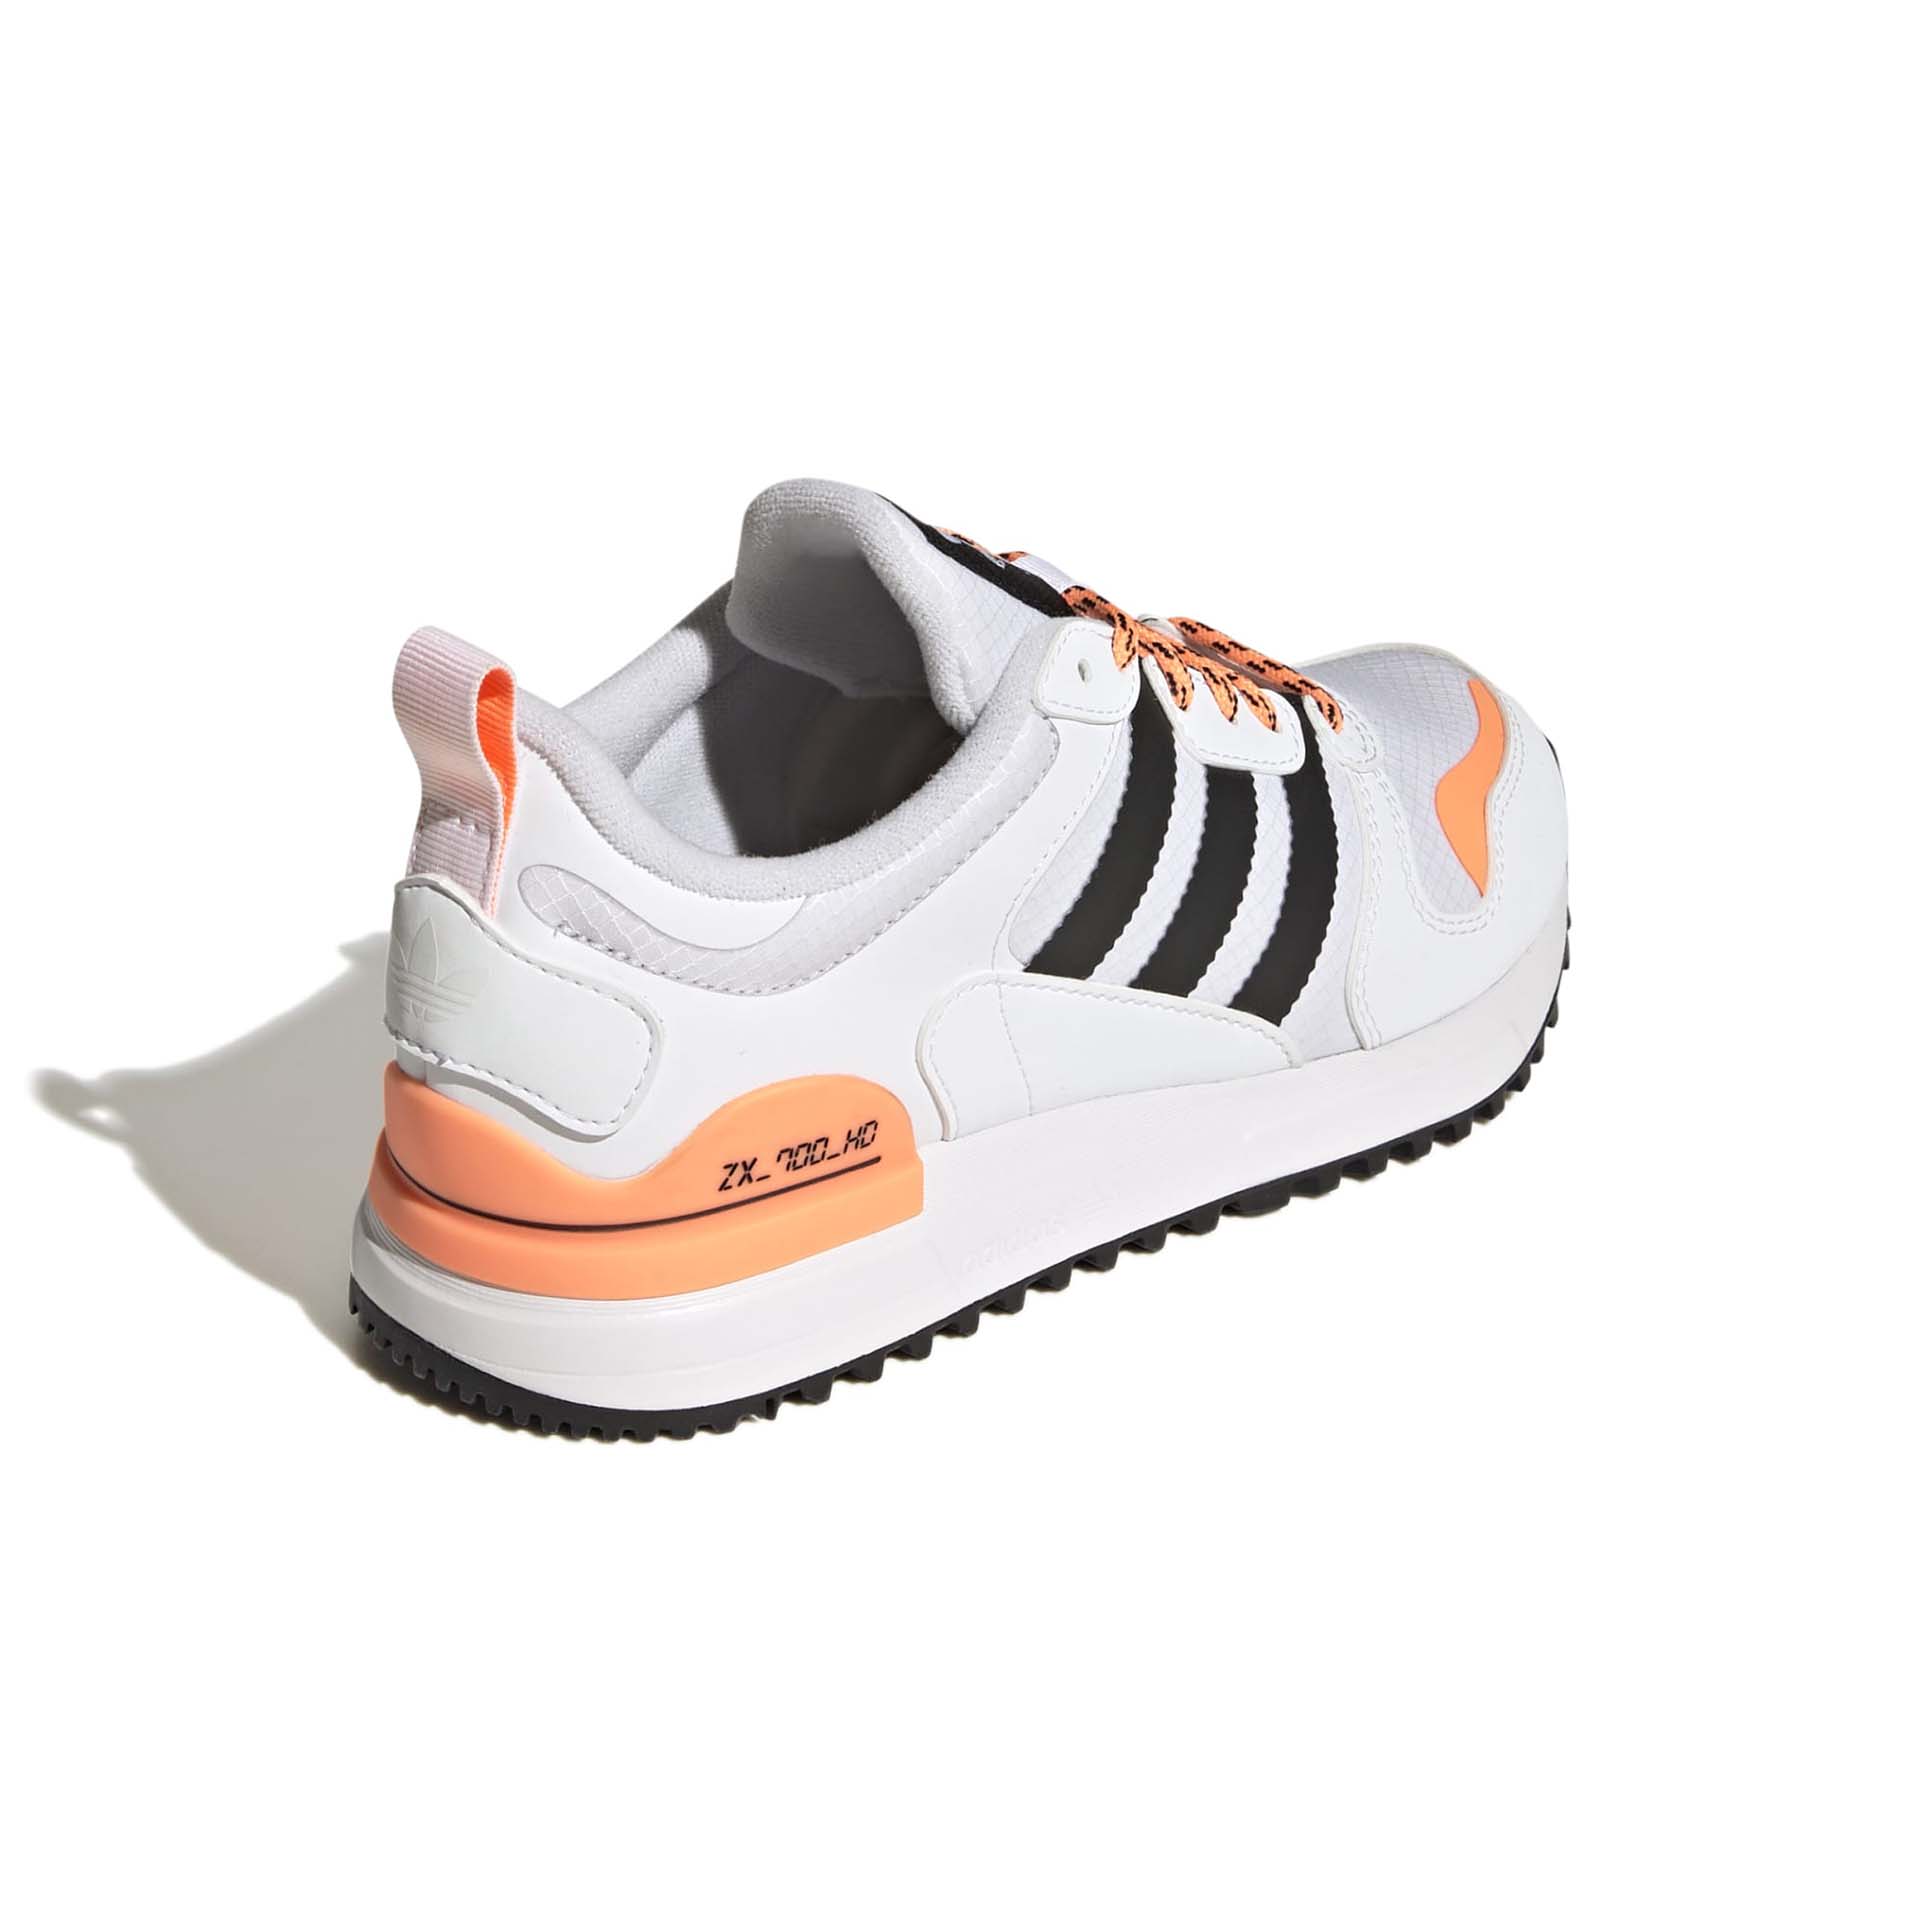 Adidas ZX 700 HD J Sneakers Footwear White/Core Black/Orange